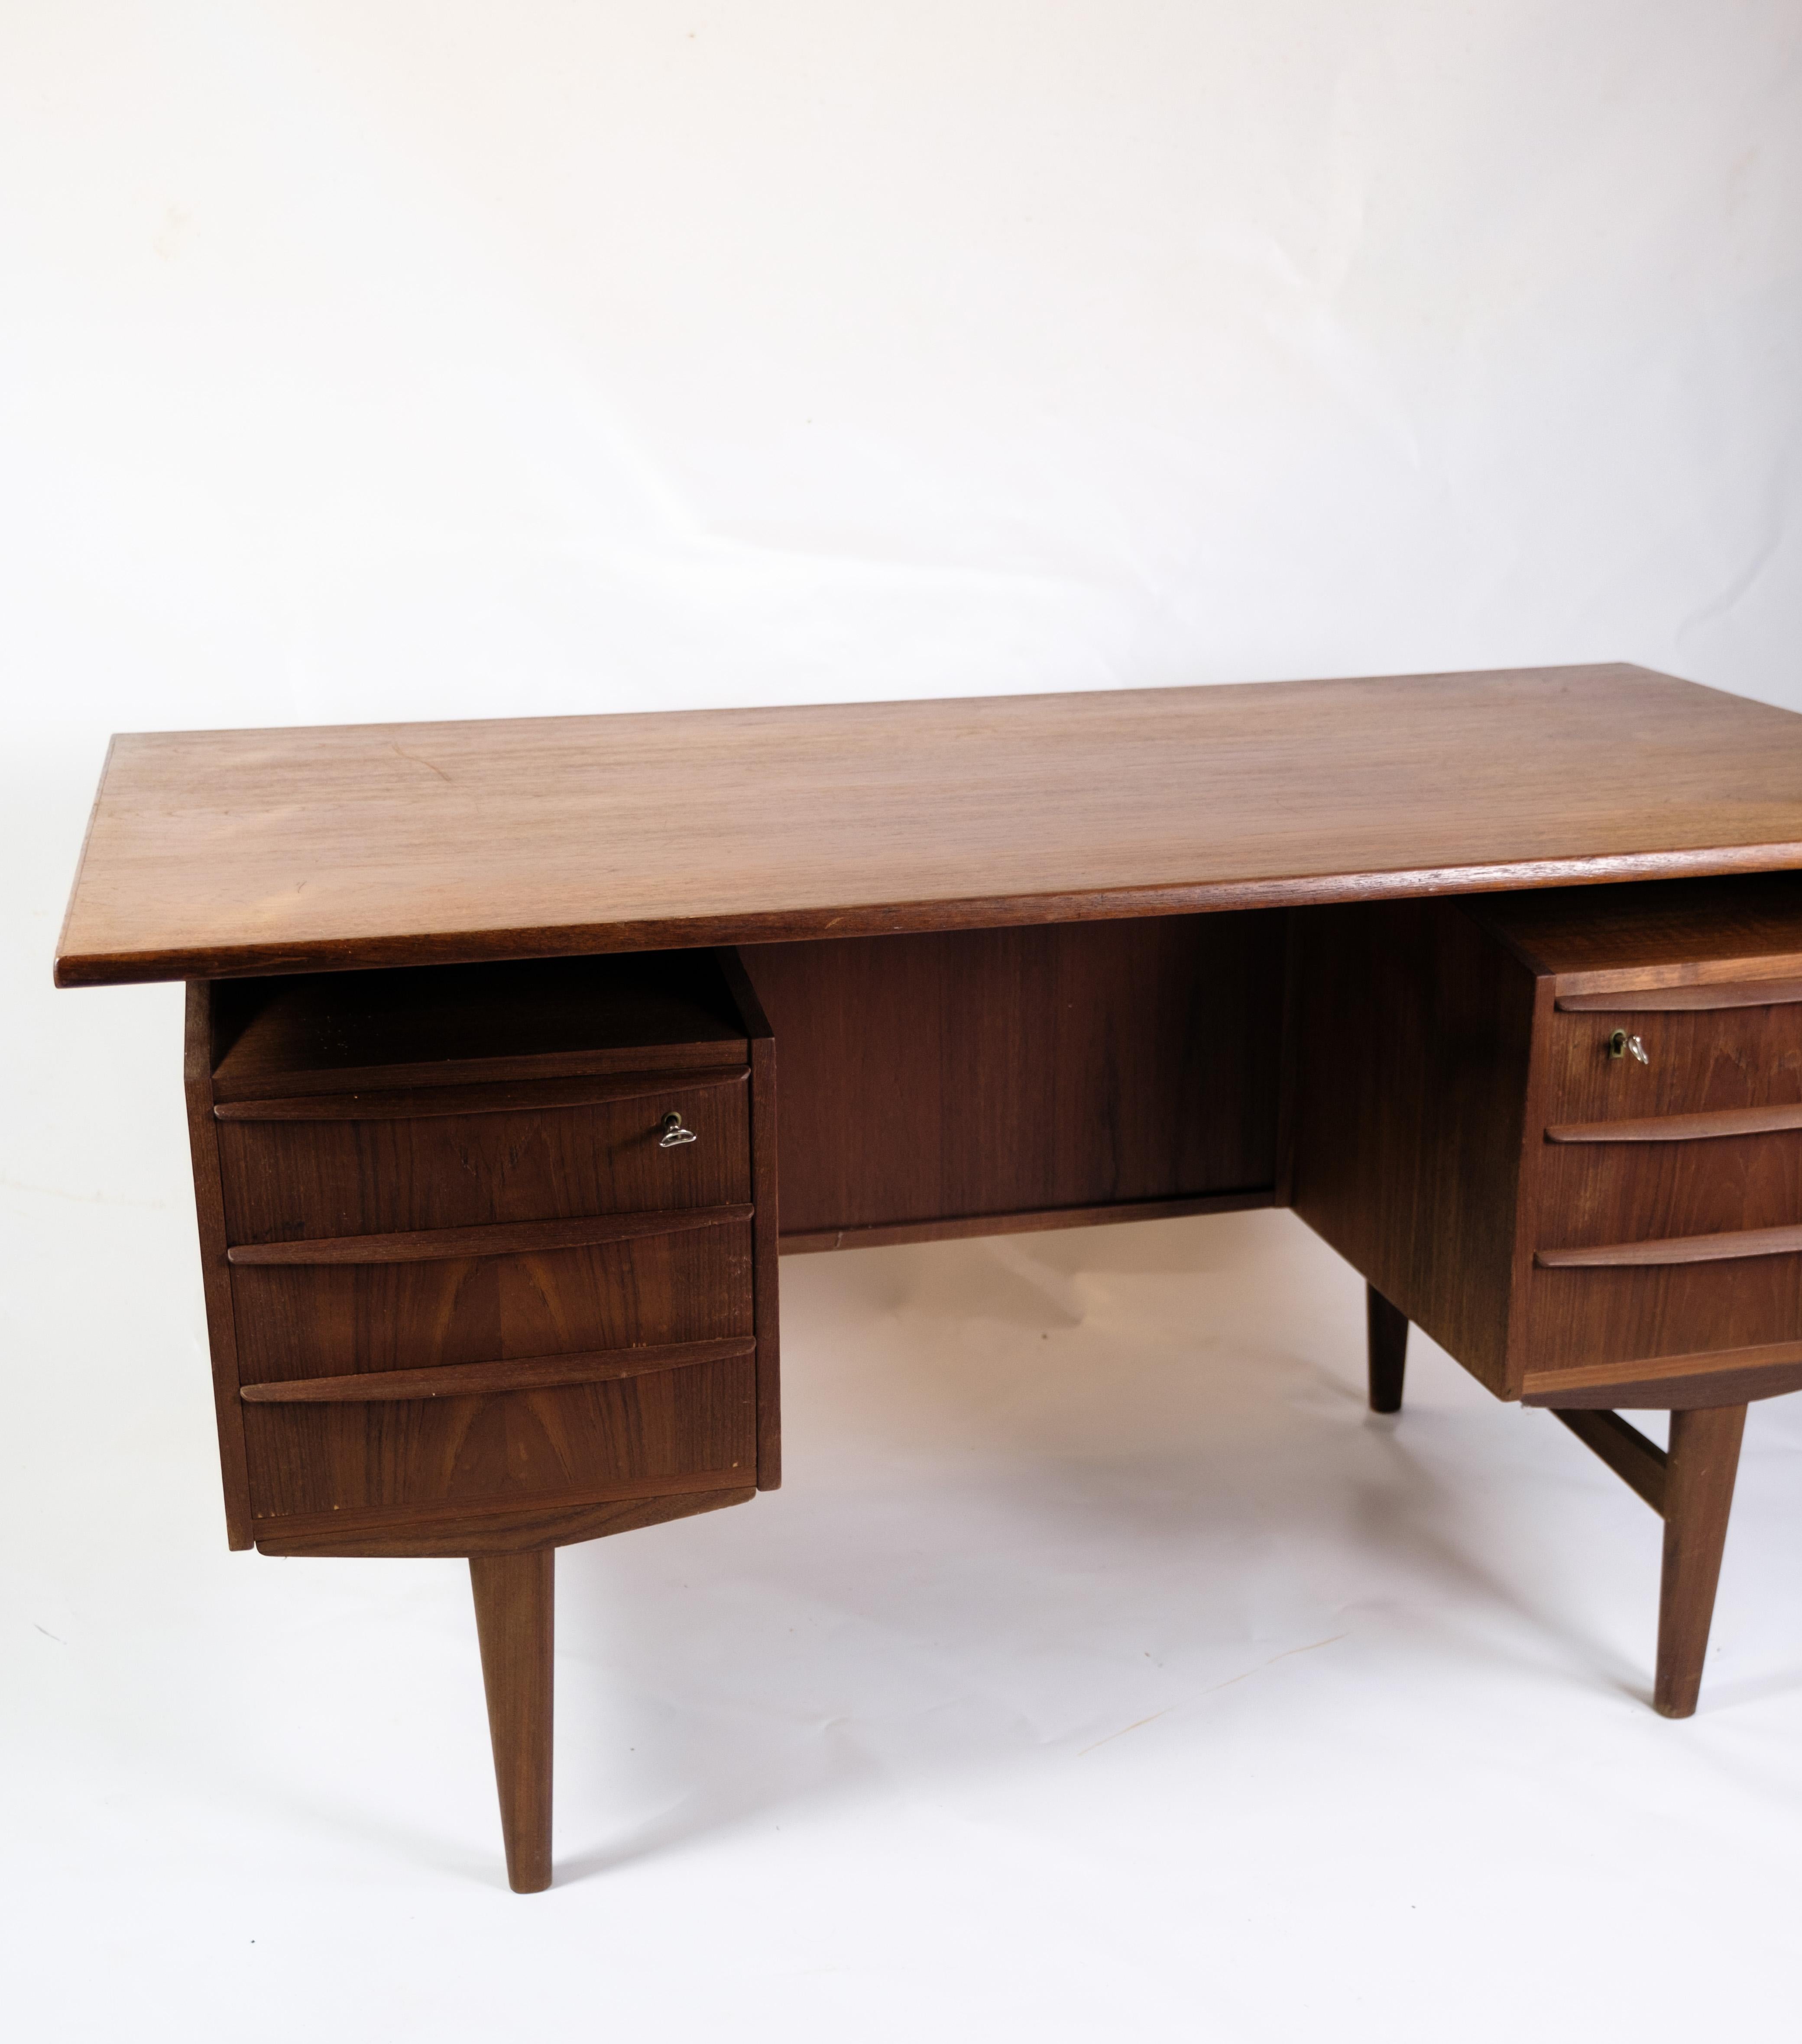 Ce bureau est un bel exemple de design danois des années 1960, en bois de teck. L'une des caractéristiques les plus remarquables de ce bureau est le plateau flottant, qui crée une esthétique visuelle aérée et légère.

La construction en bois de teck